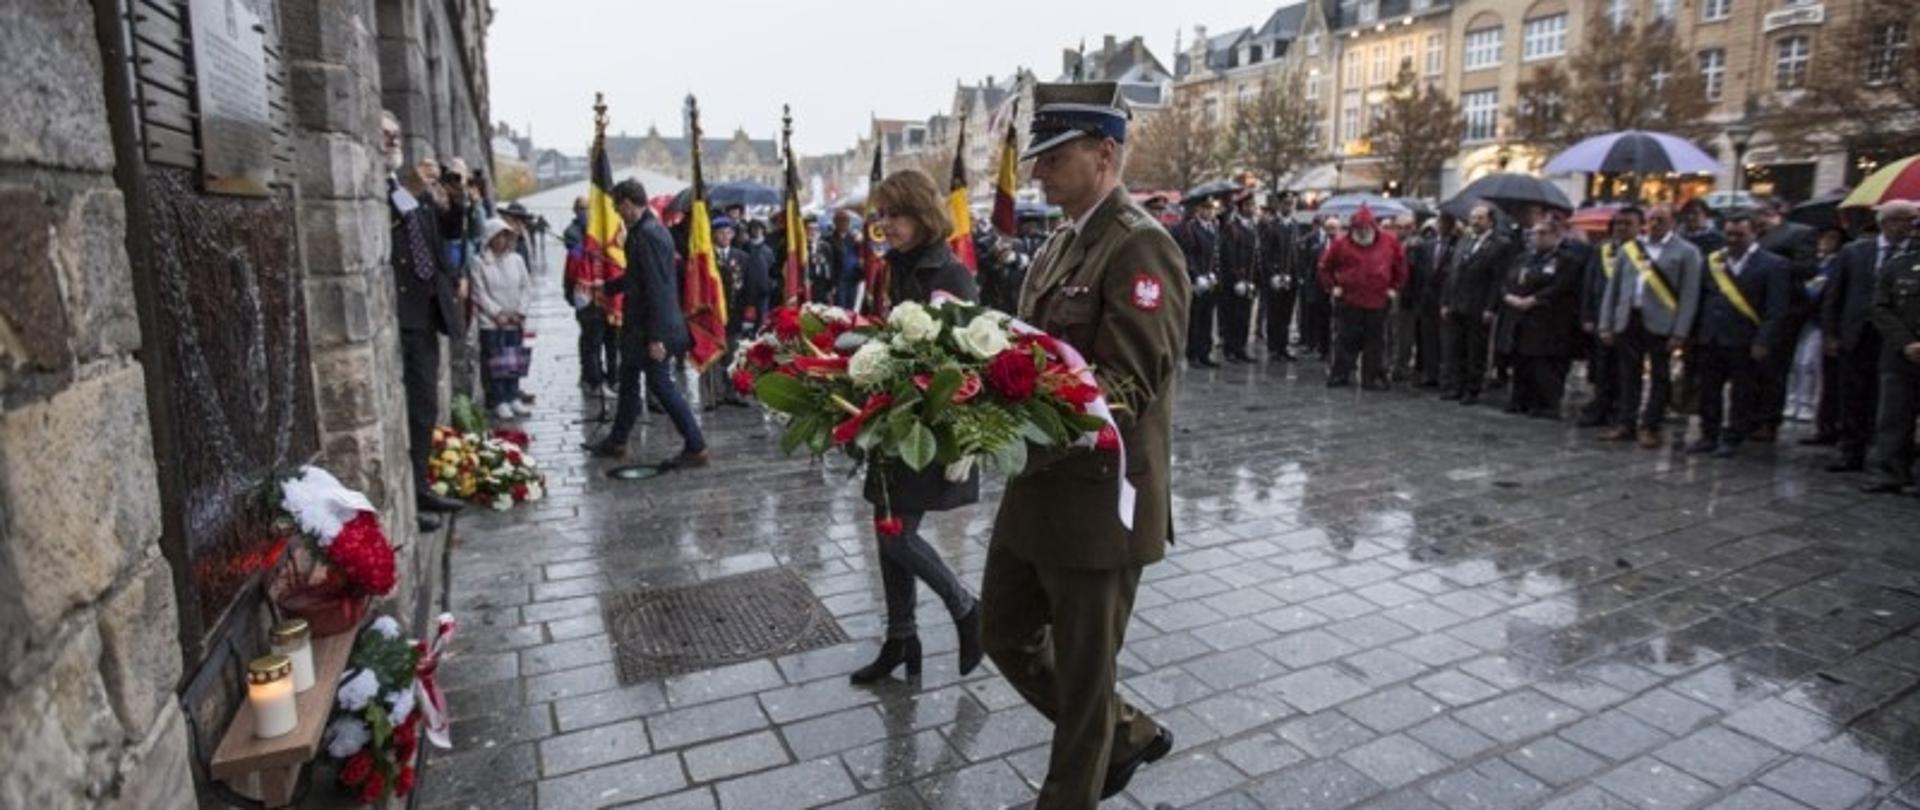 Obchody 75. rocznicy wyzwolenia Ieper (Ypres) oraz wznowienia ceremonii Last Post